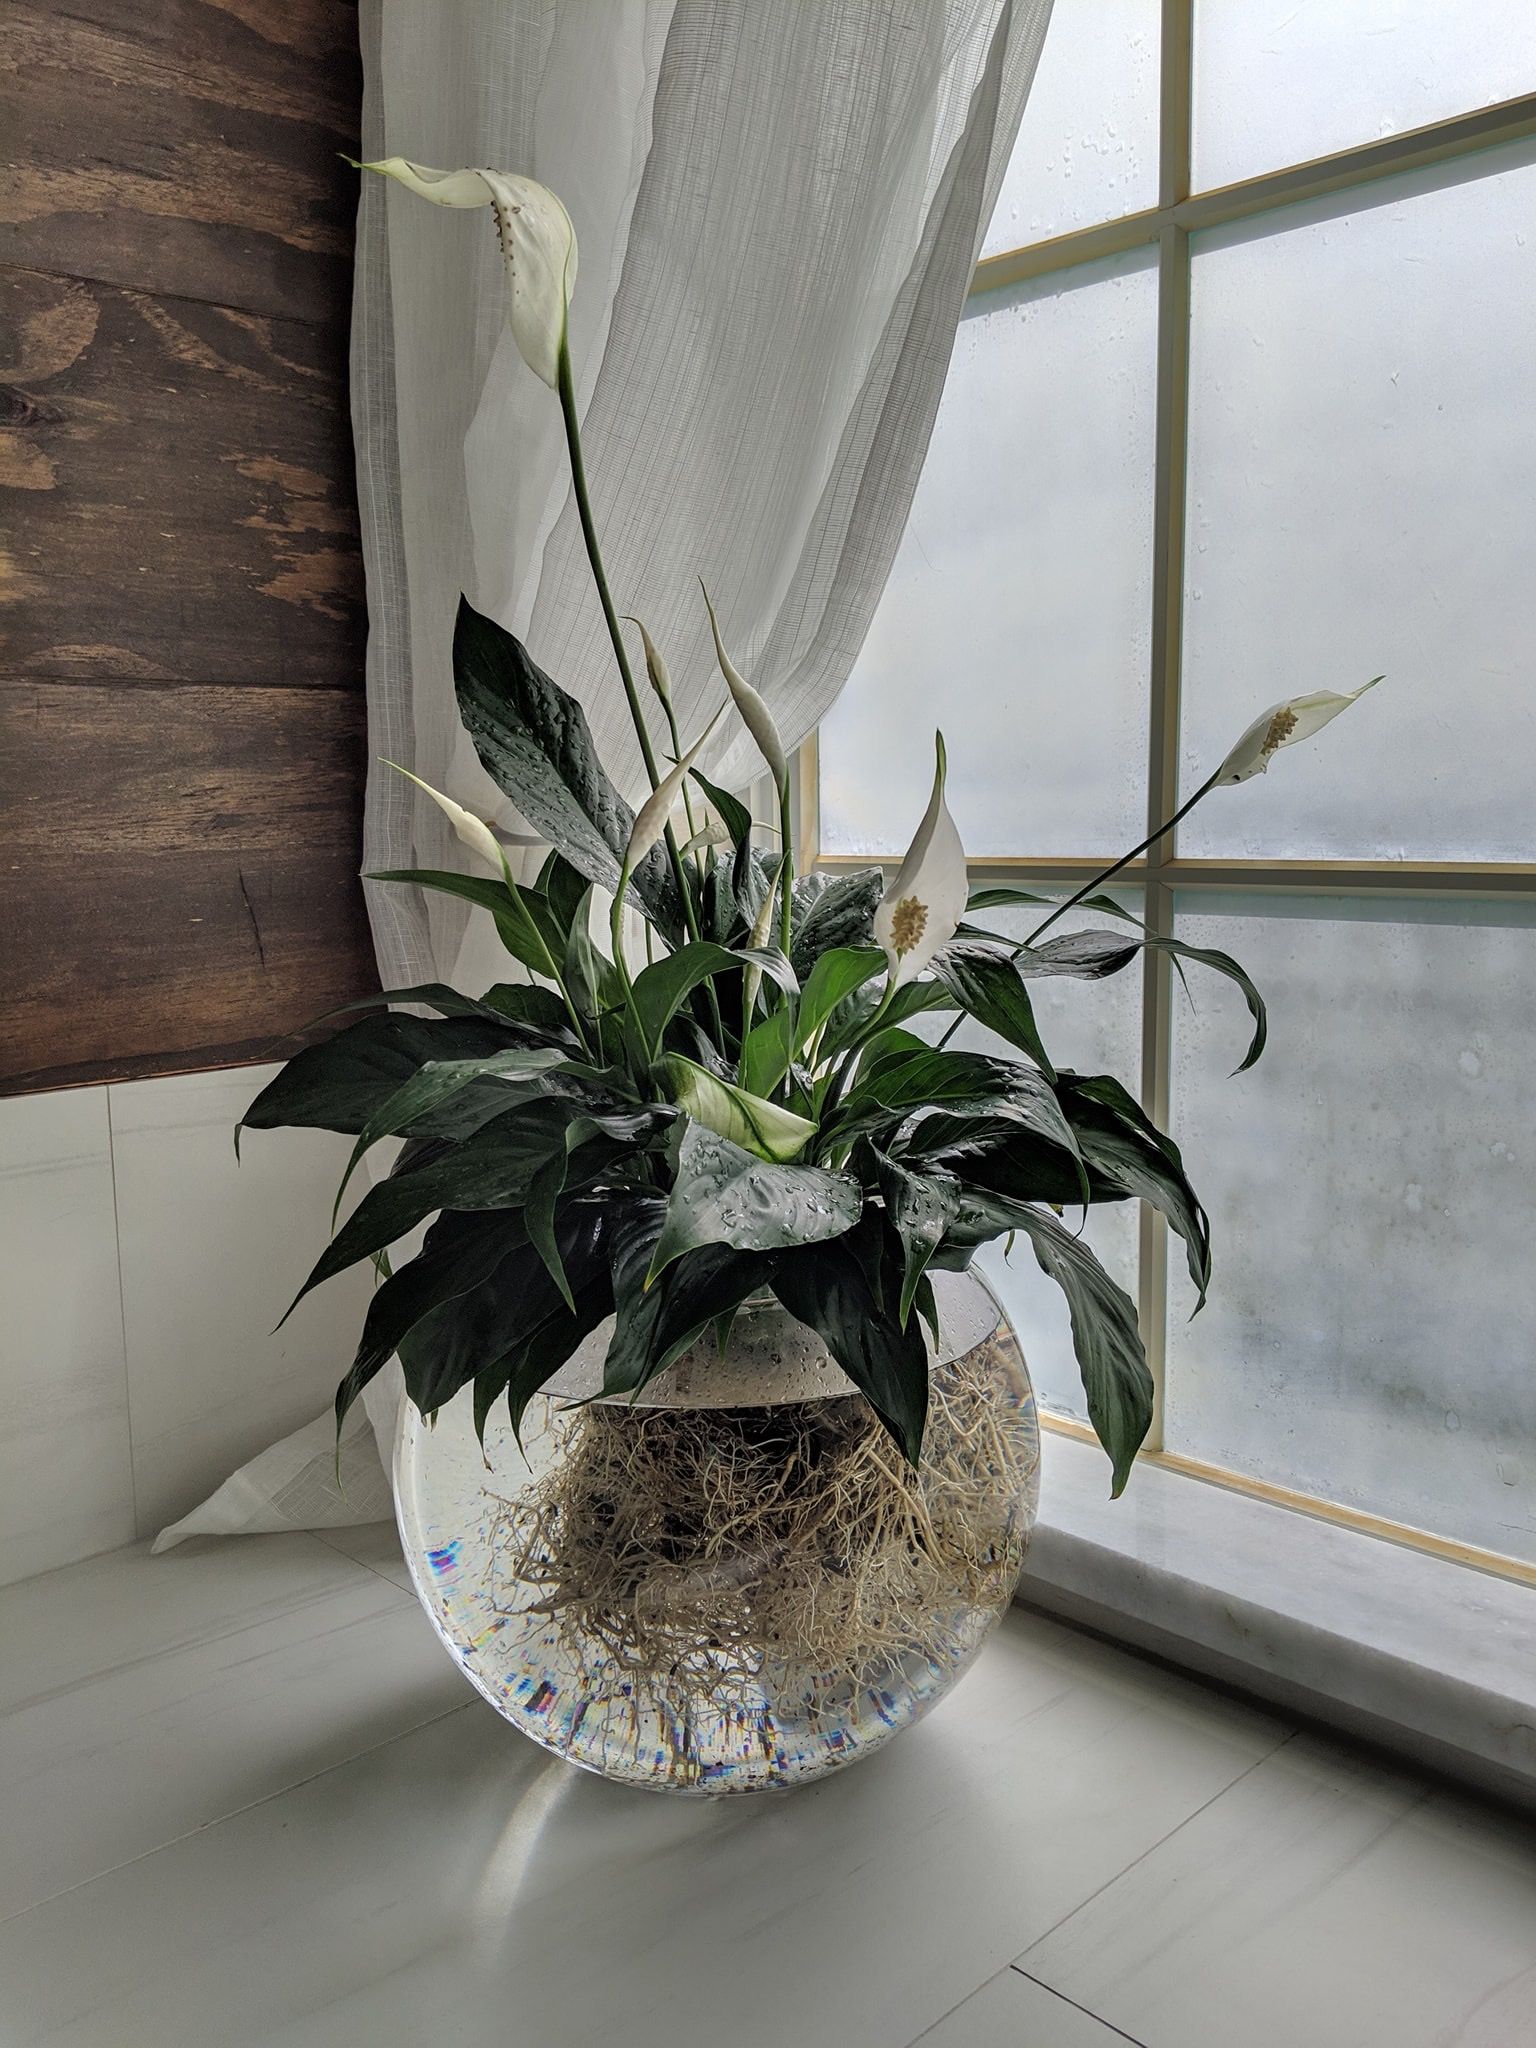 lírio-da-paz cultivado na água em vaso